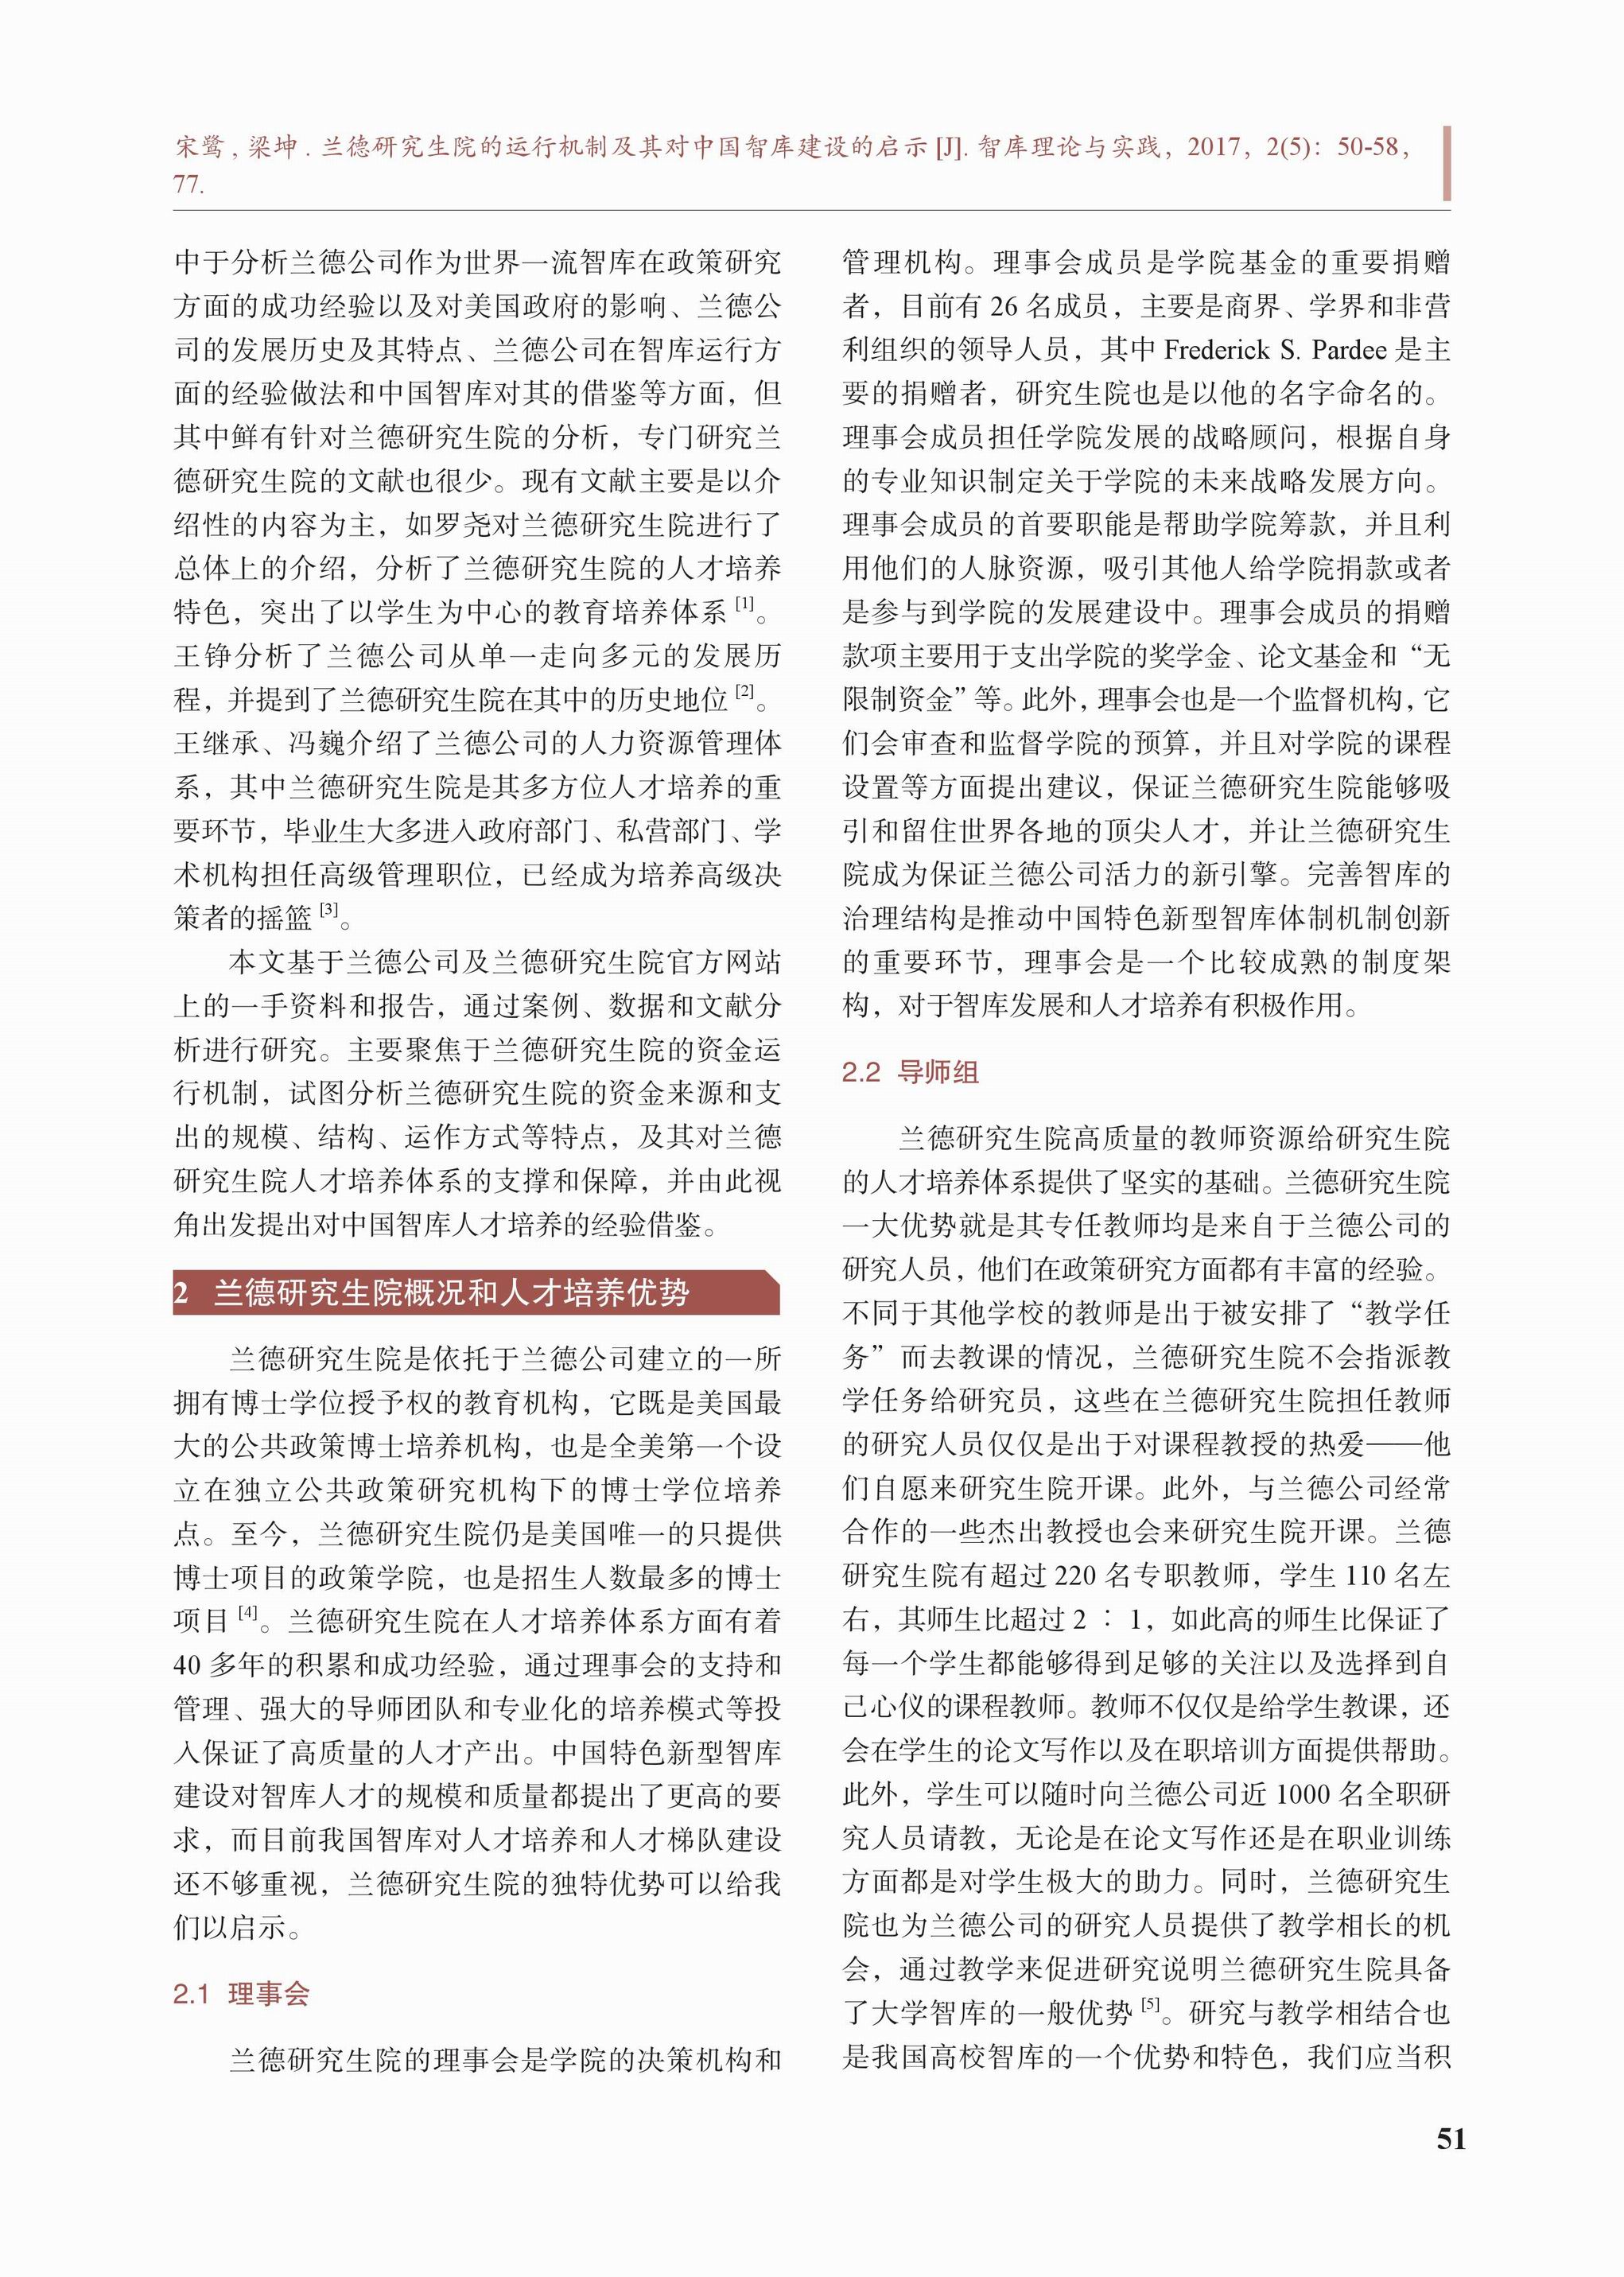 兰德研究生院的运行机制及其对中国智库建设的启示(图2)